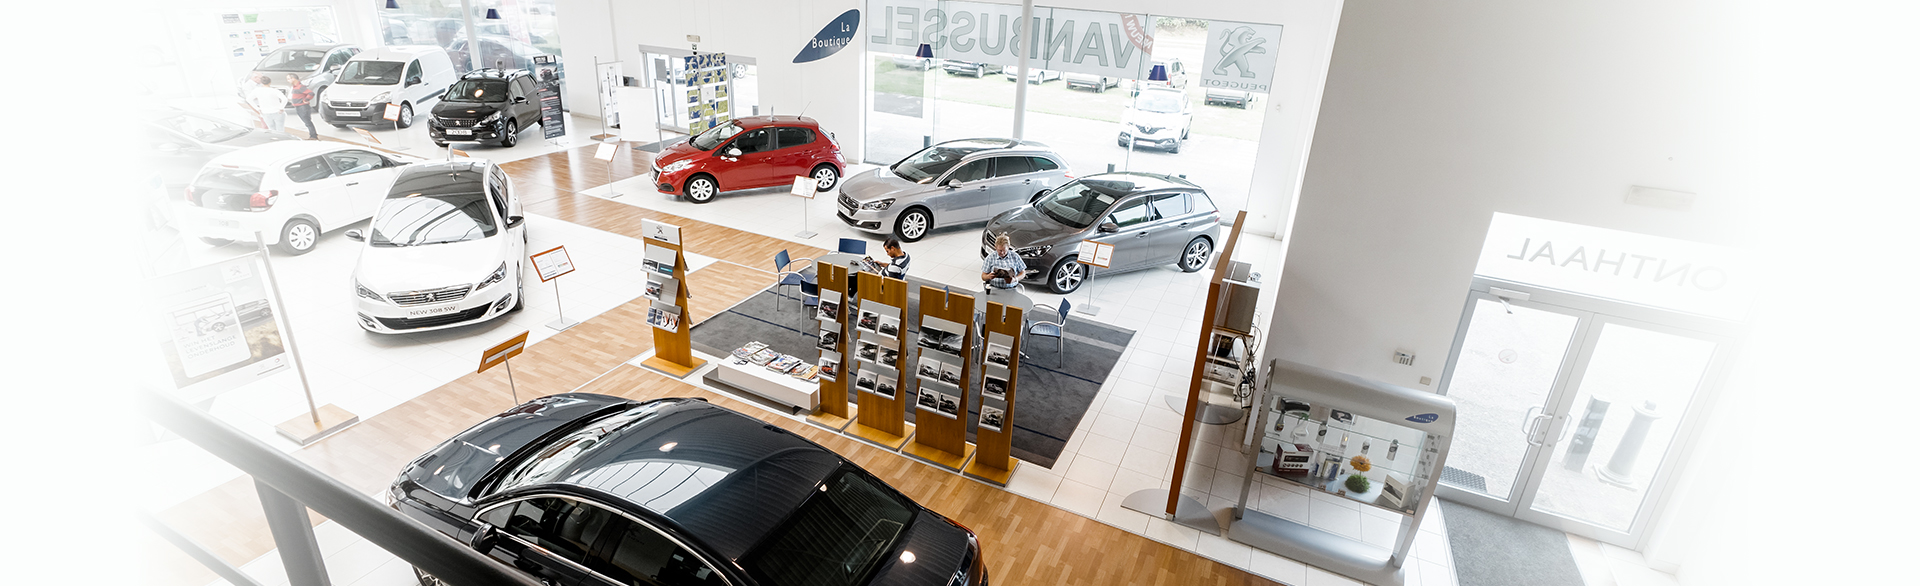 Peugeot voertuigen in de showroom.